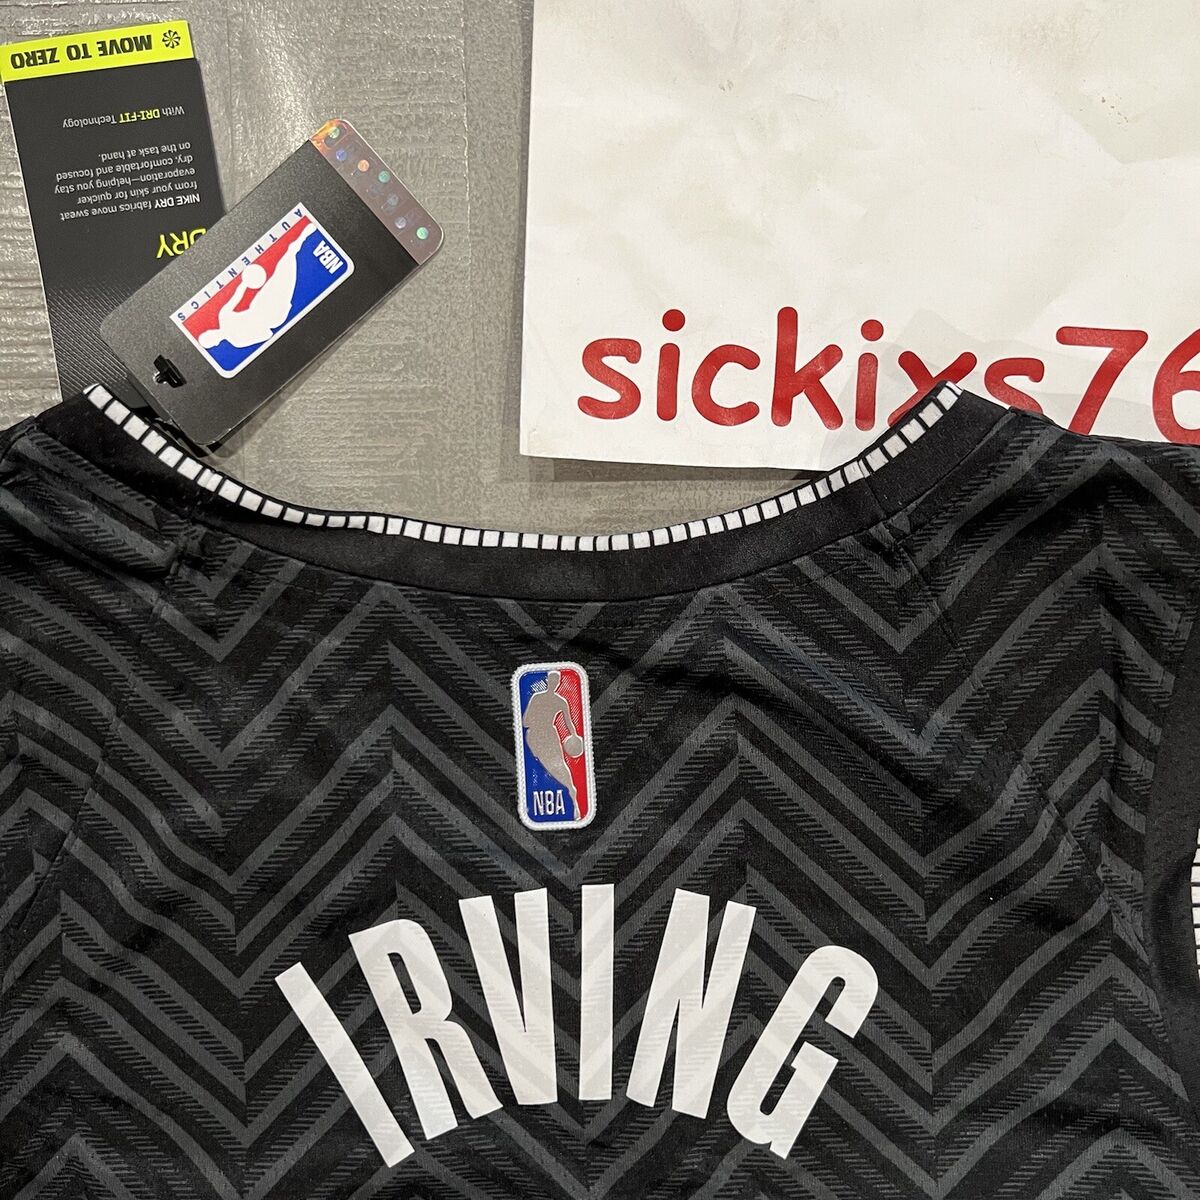 Nike Men's Brooklyn Nets Kyrie Irving #11 White Dri-Fit Swingman Jersey, XXL